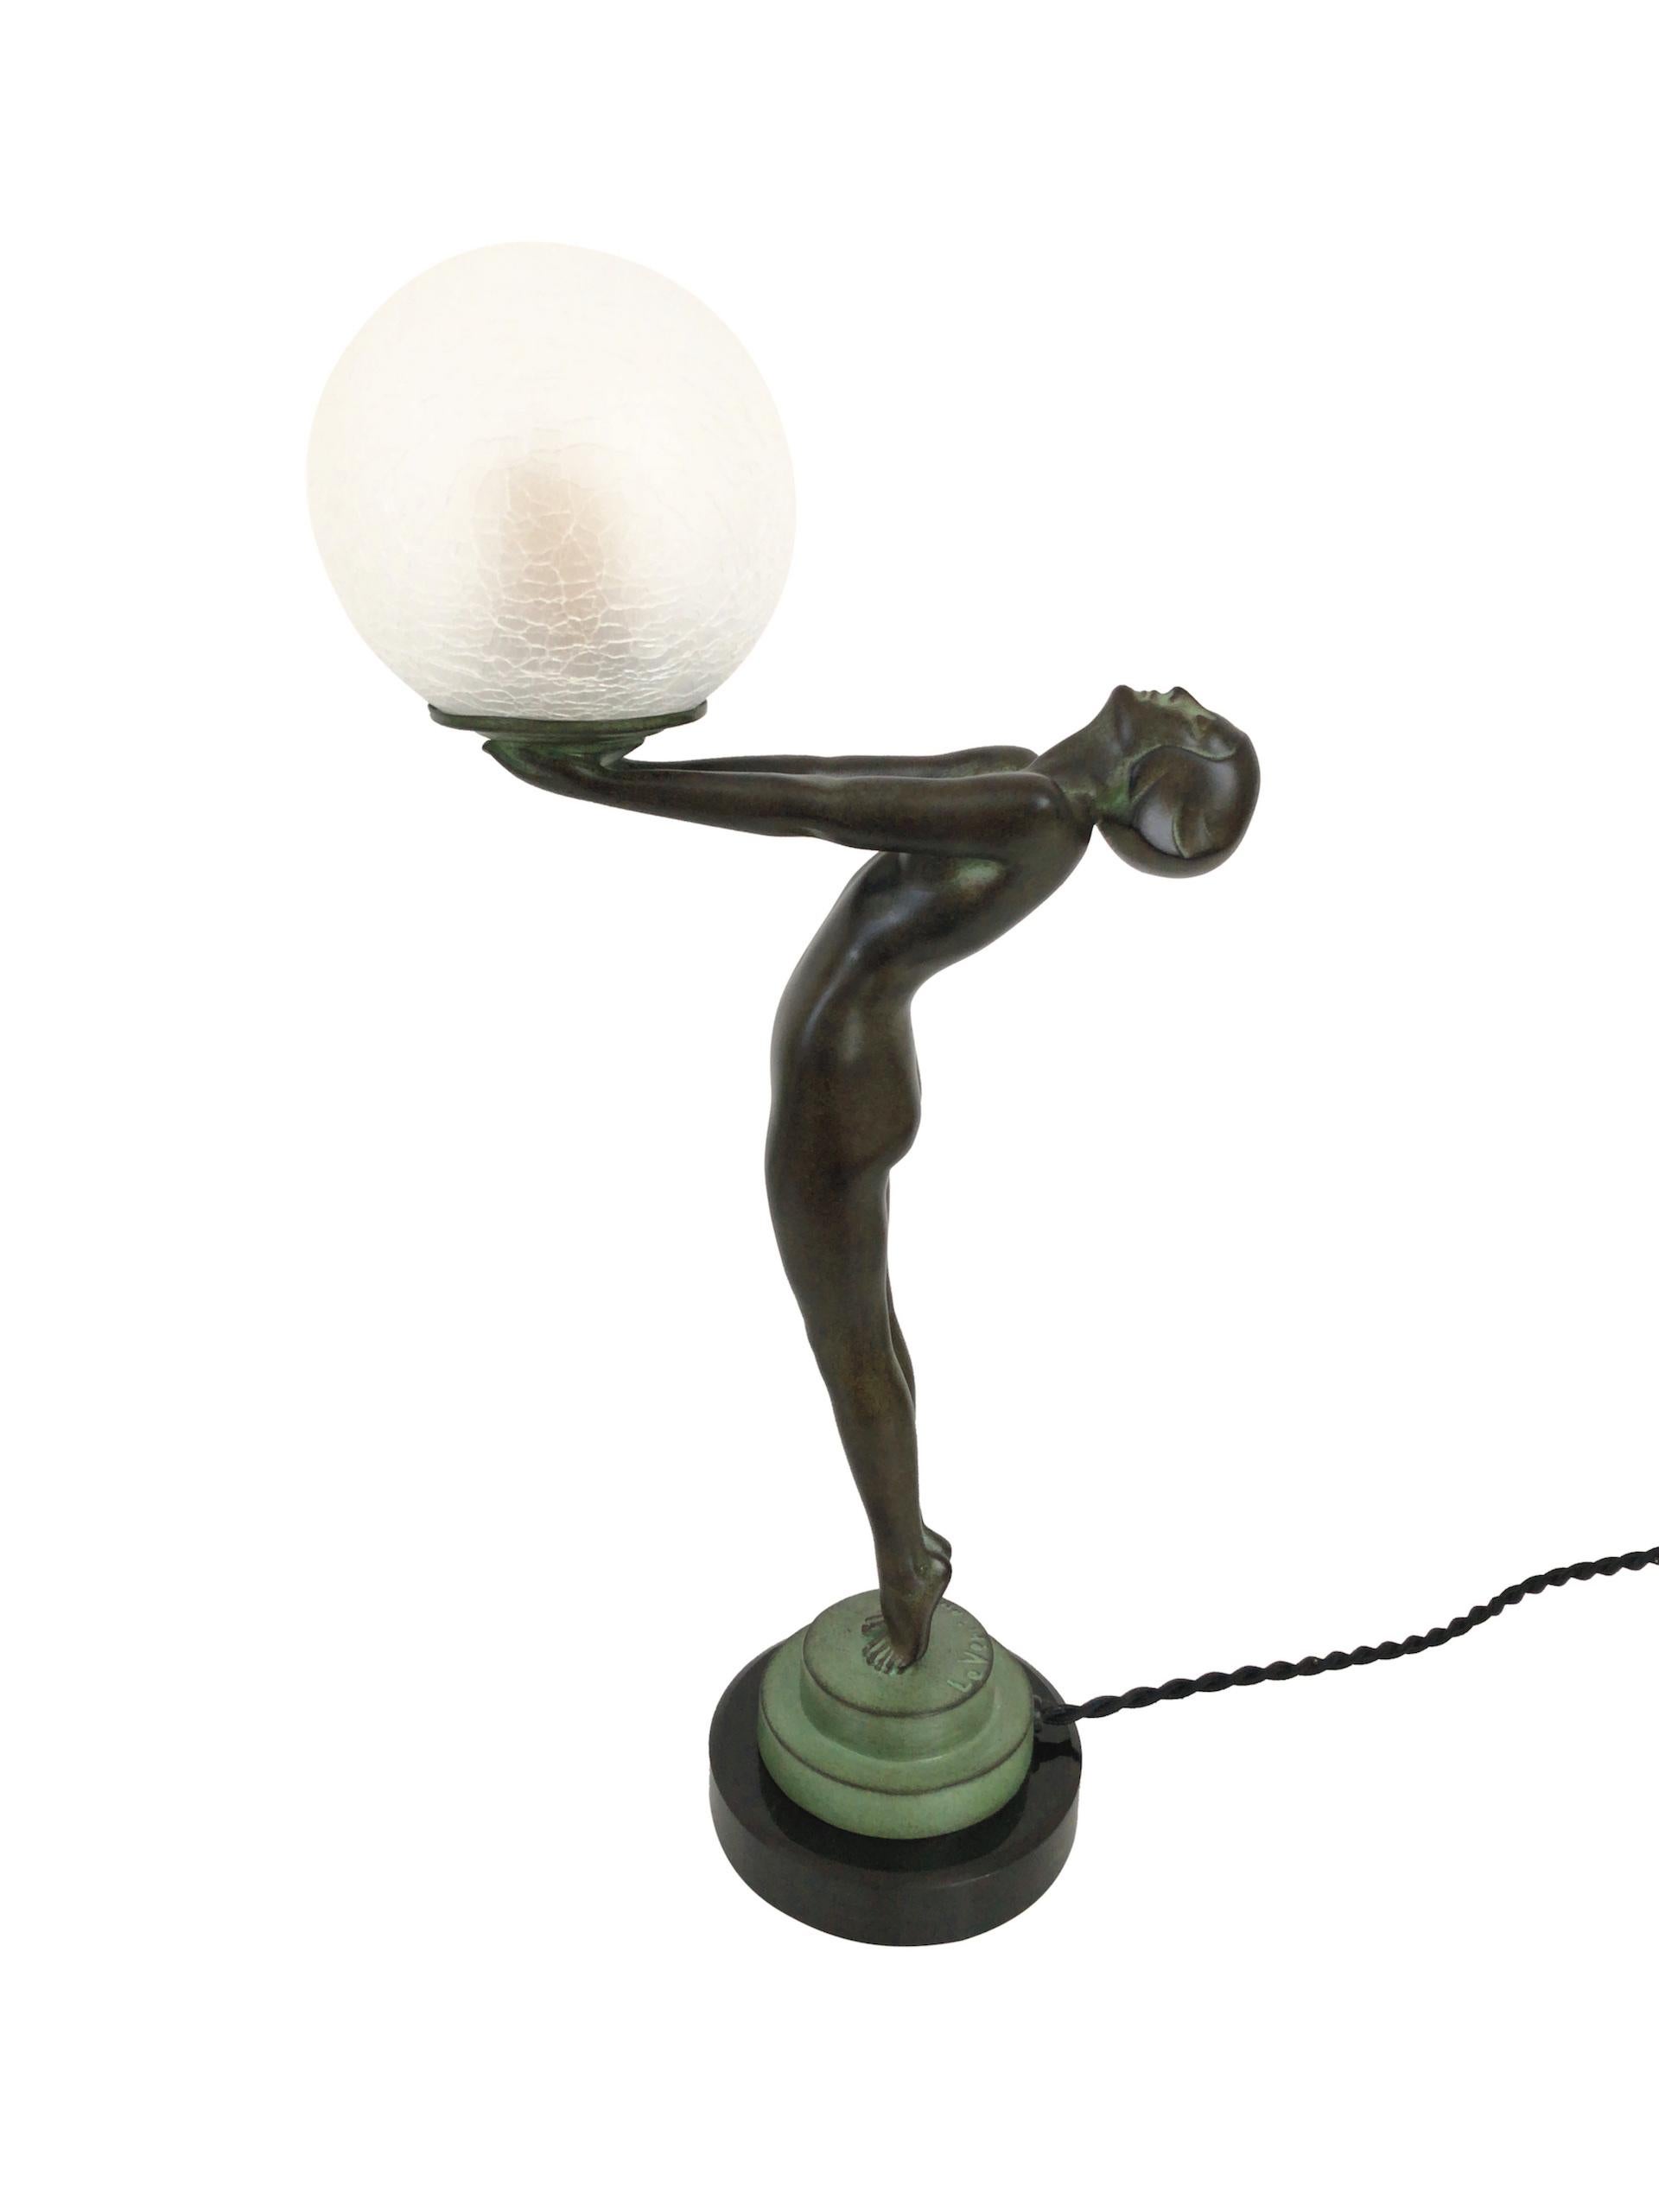 Clarté Sculpture Lueur Lamp from the Important Art Deco Artist Max Le Verrier 5